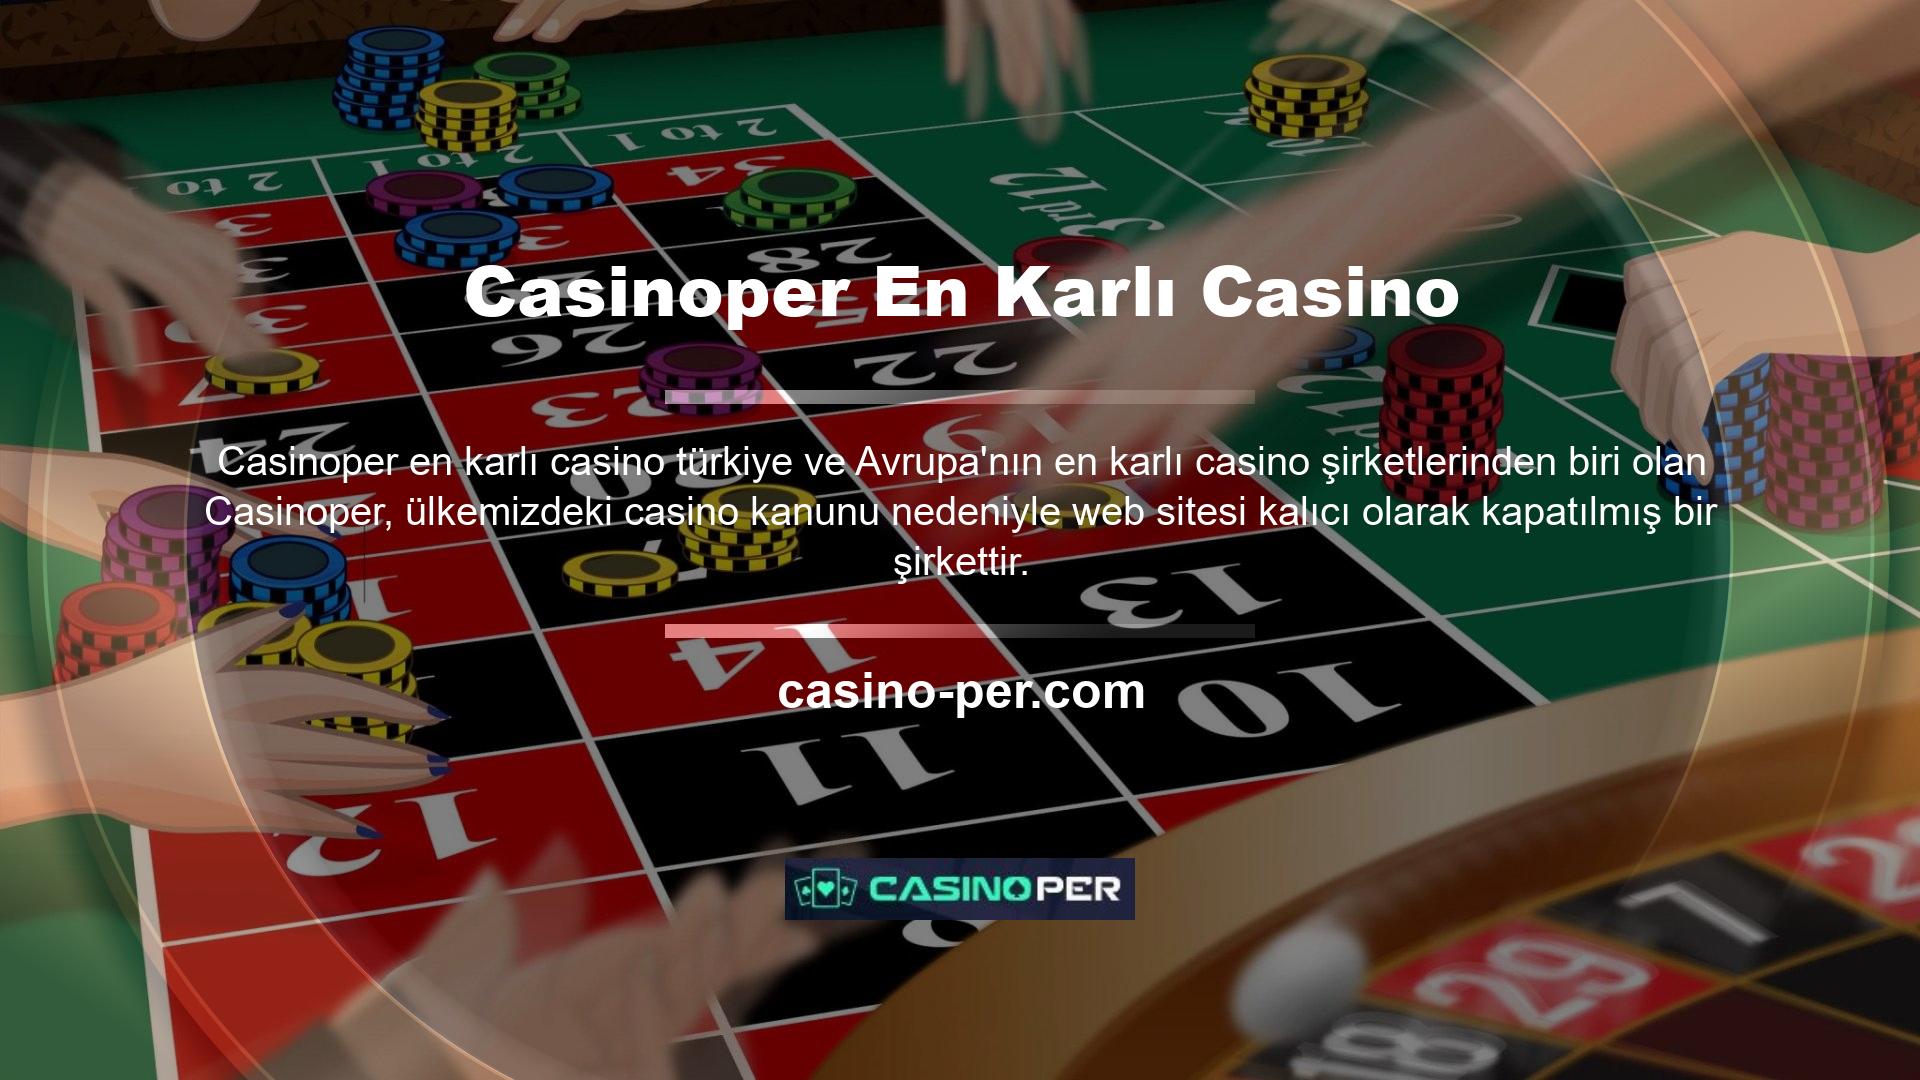 Güvenilir bahis imkanı sunan ve Avrupa standartlarına uygun olan Casinoper giriş adresleri sürekli güncellenmektedir